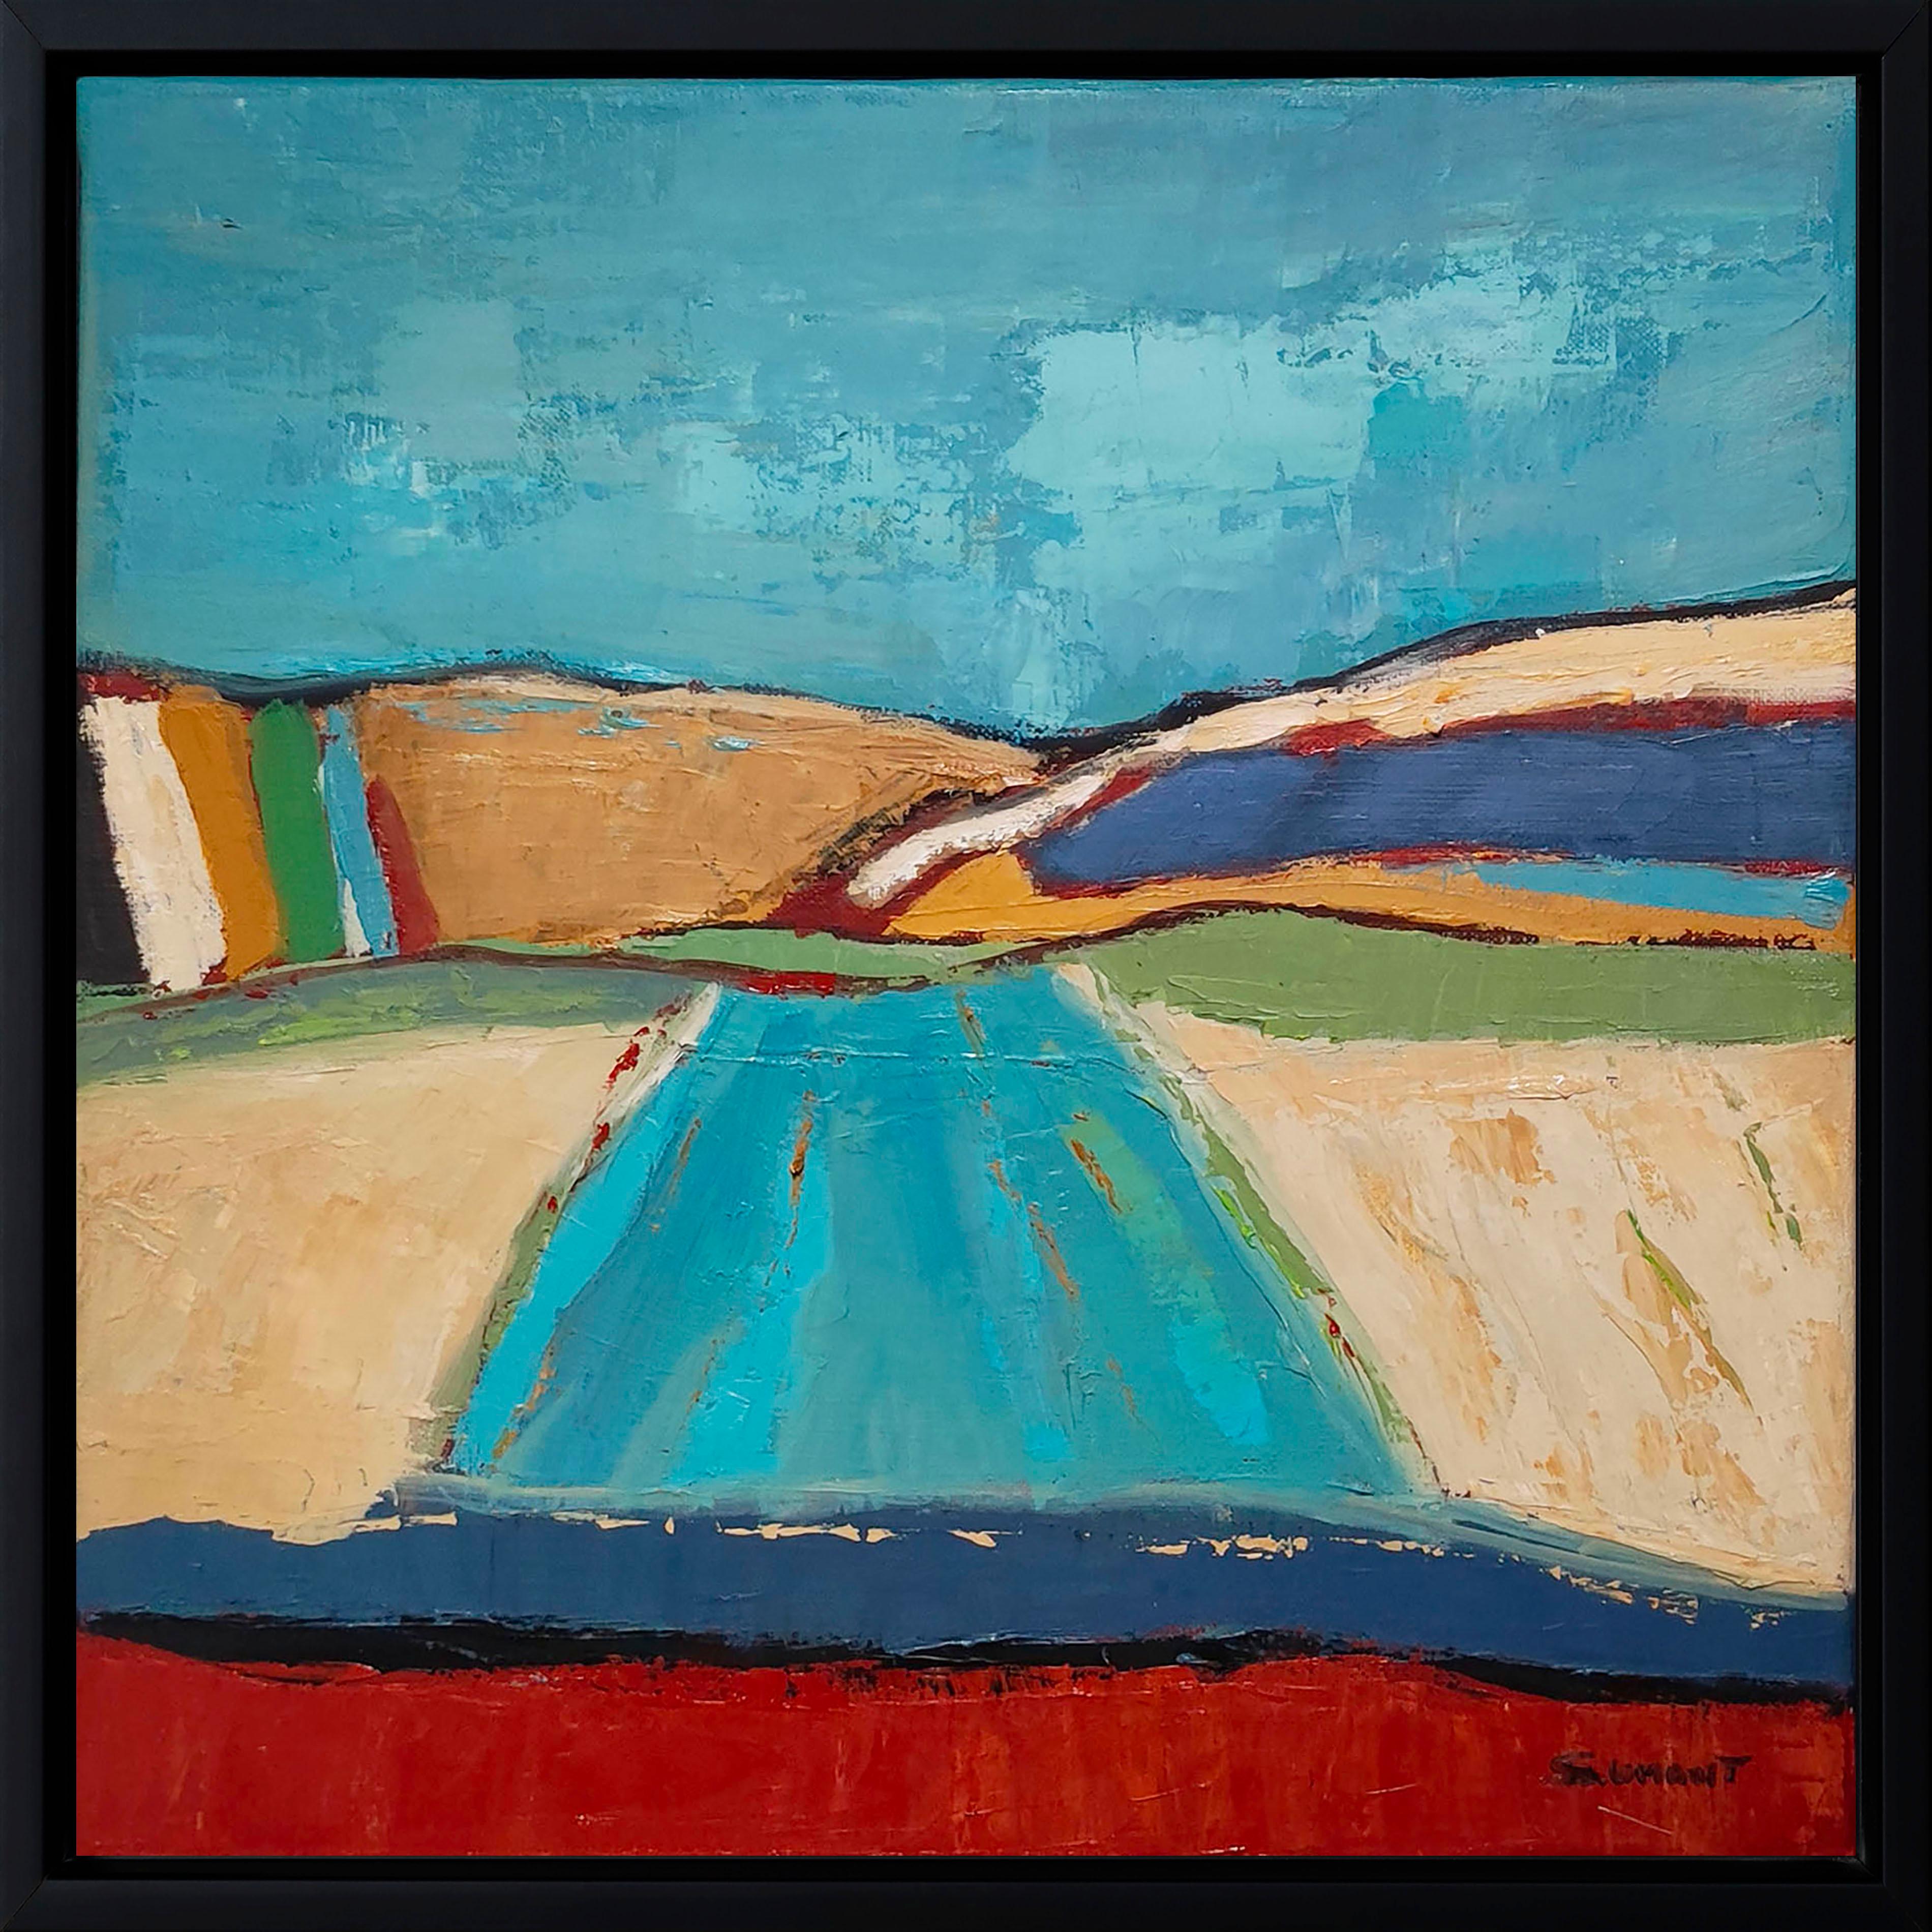 Abstract Painting SOPHIE DUMONT - paysage bleu, campagne abstraite, contemporain, huile sur toile, texturé